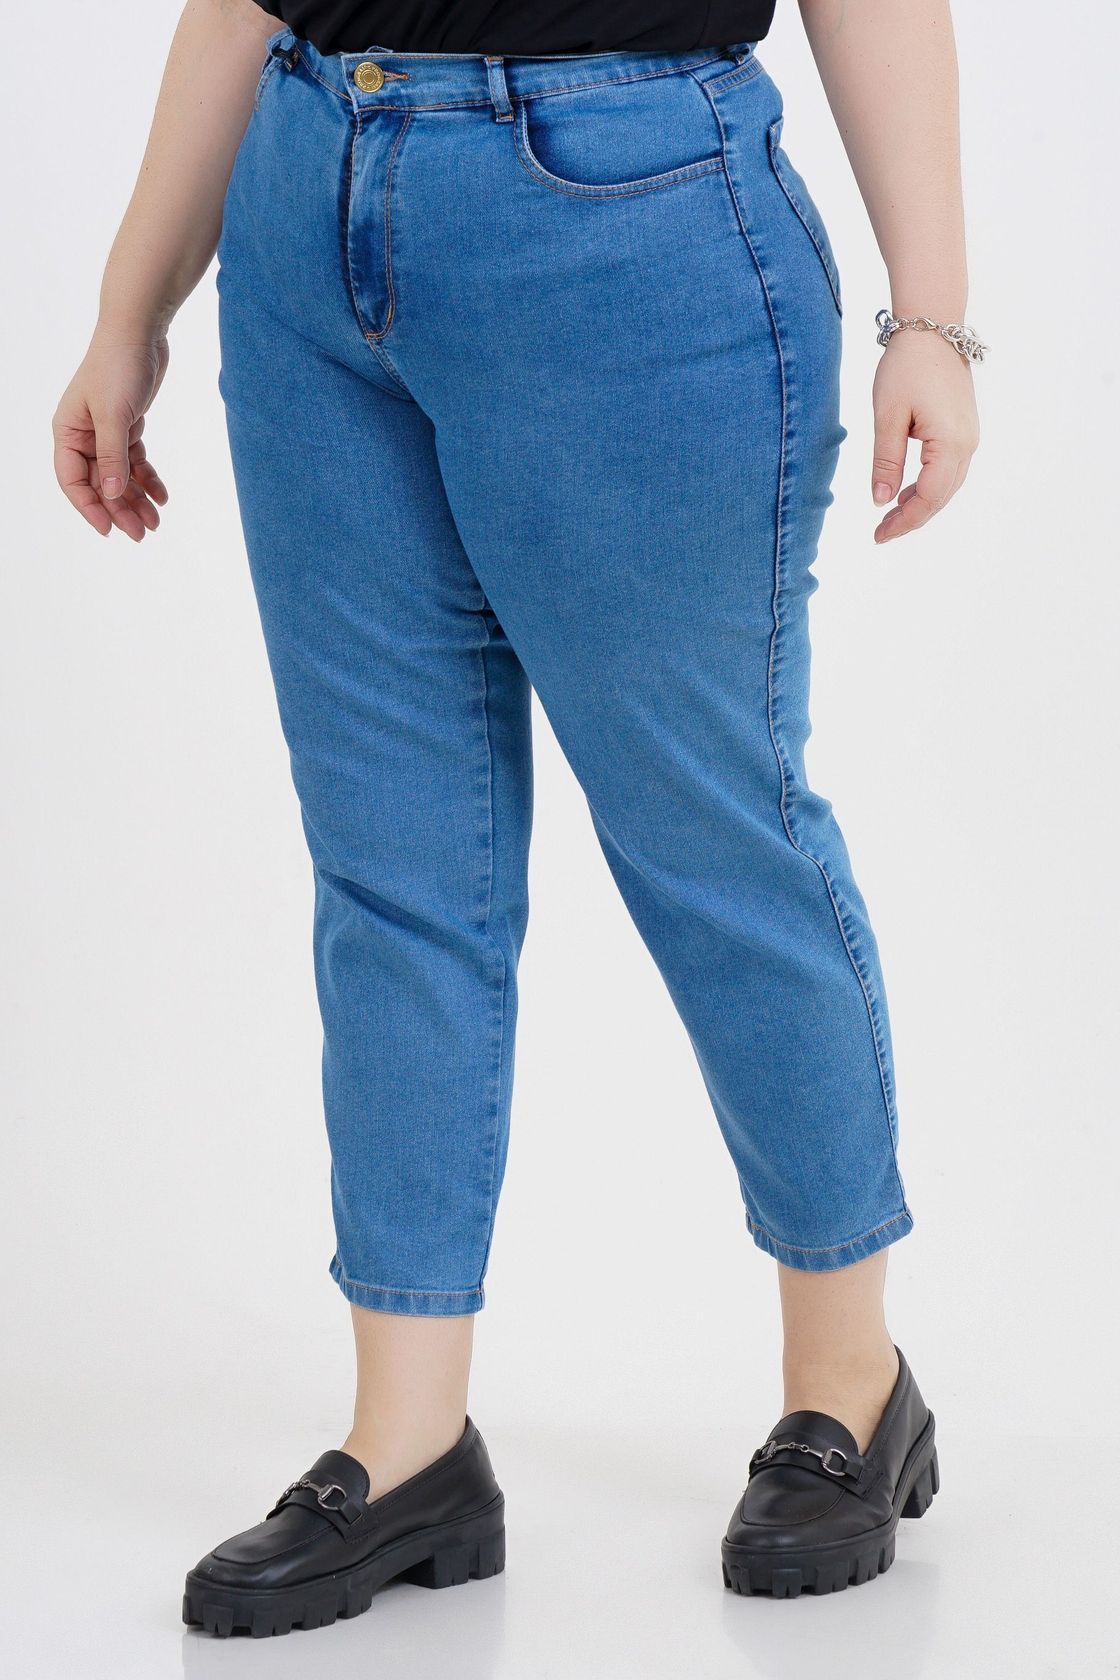 Calça mom Jeans Feminina-Calça Jeans Feminina-Calça Jeans mom